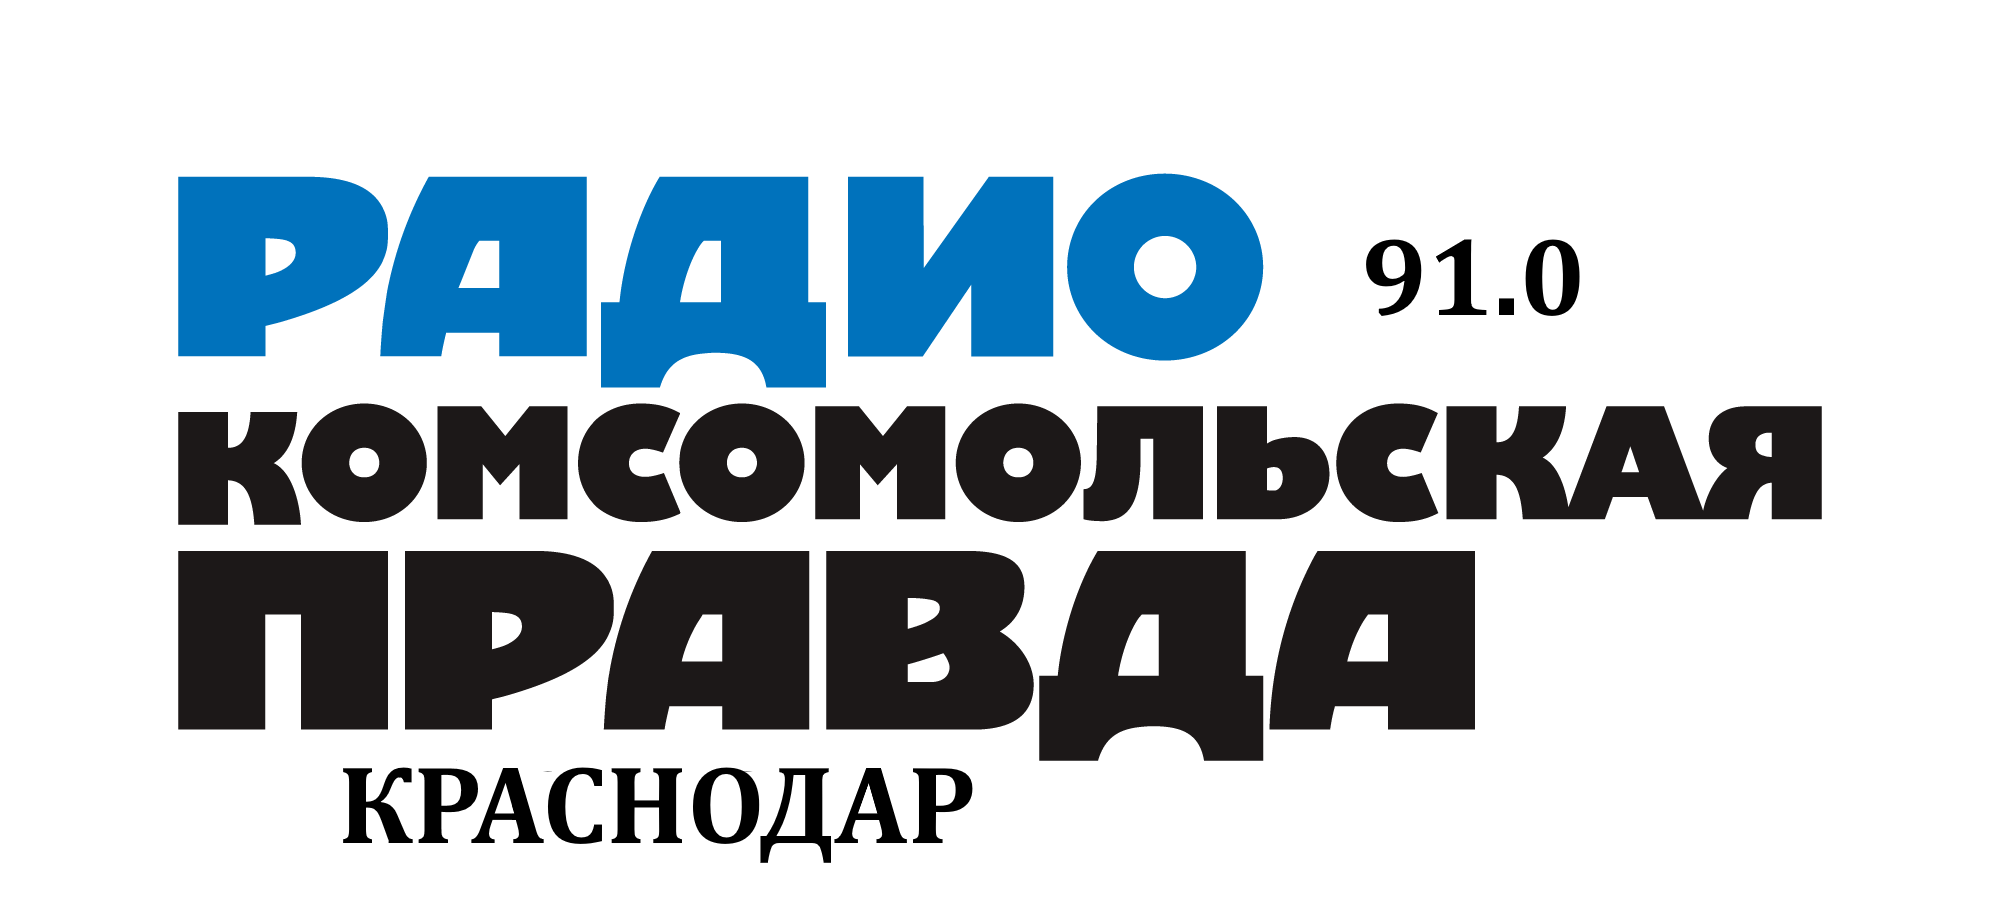 Раземщение рекламы Комсомольская правда 91.0 FM, г. Краснодар